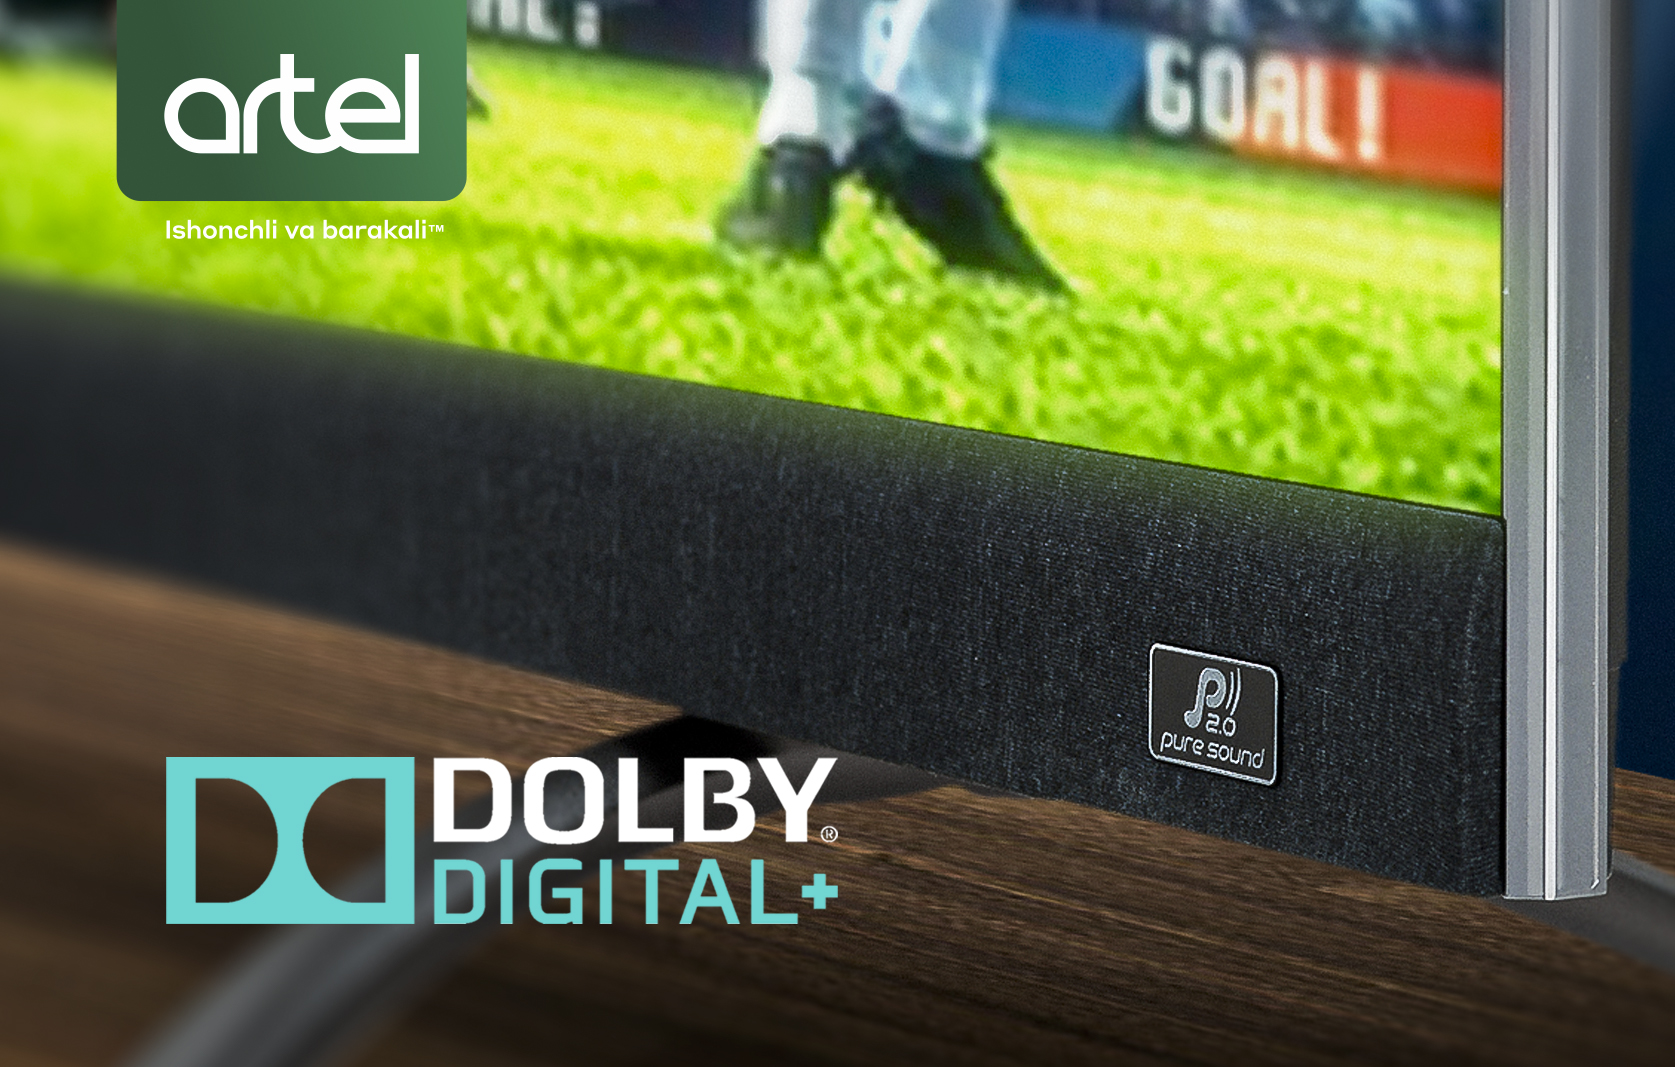 Dolby digital +